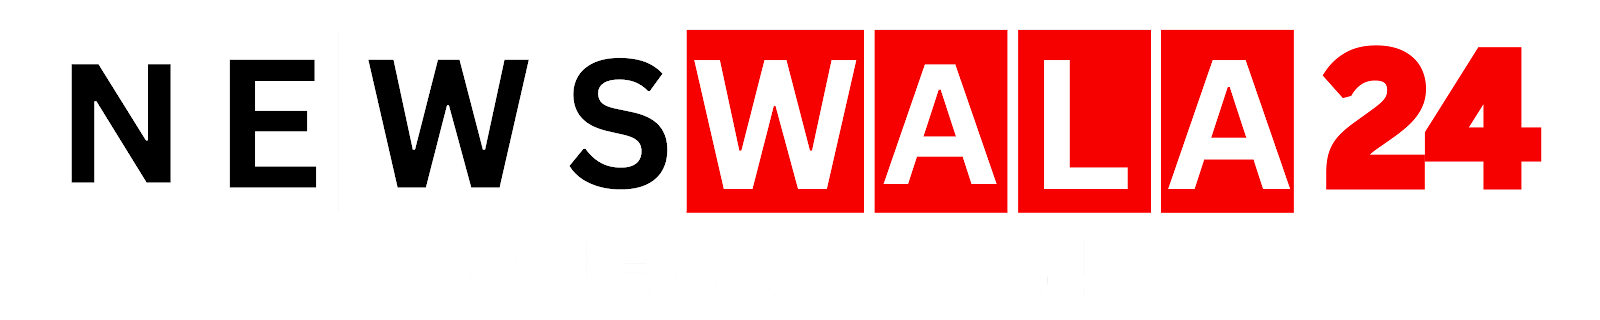 Newswala24